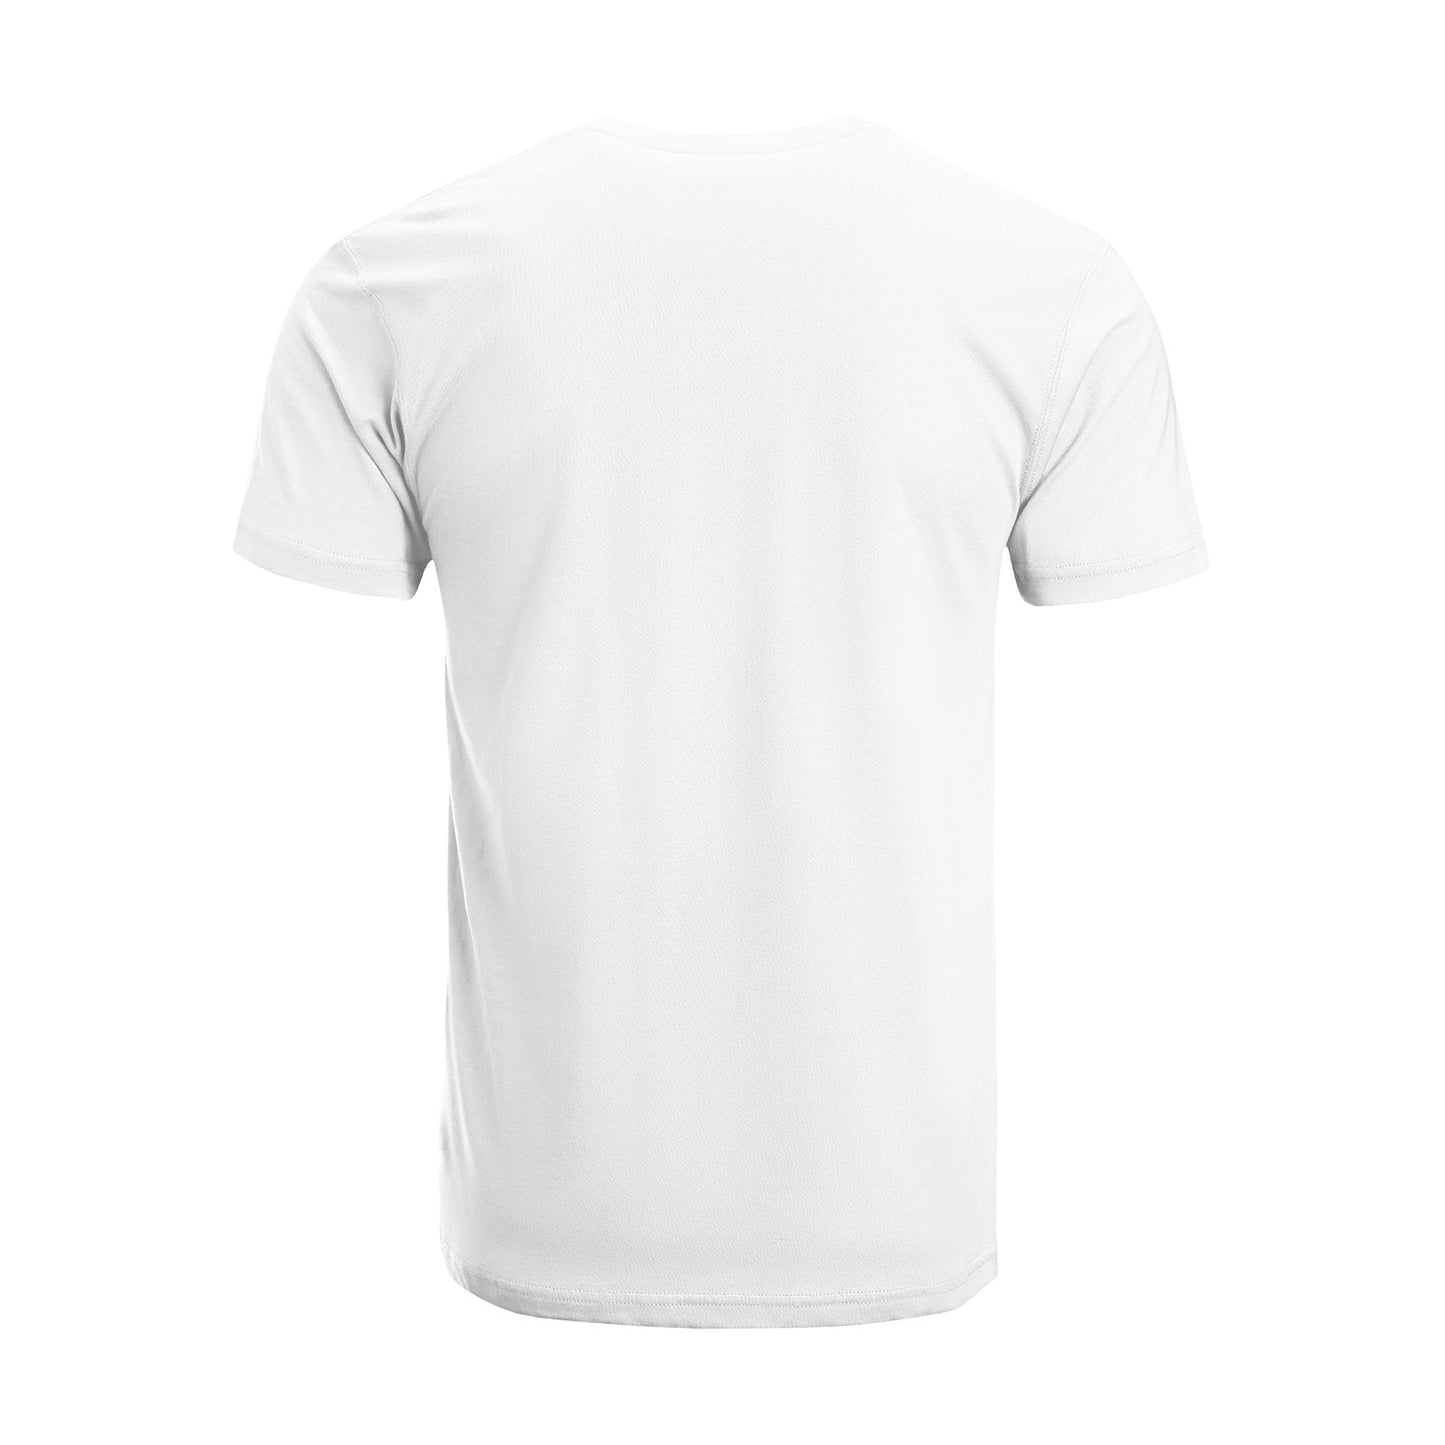 Unisex Short Sleeve Crew Neck Cotton Jersey T-Shirt TRUCK 50